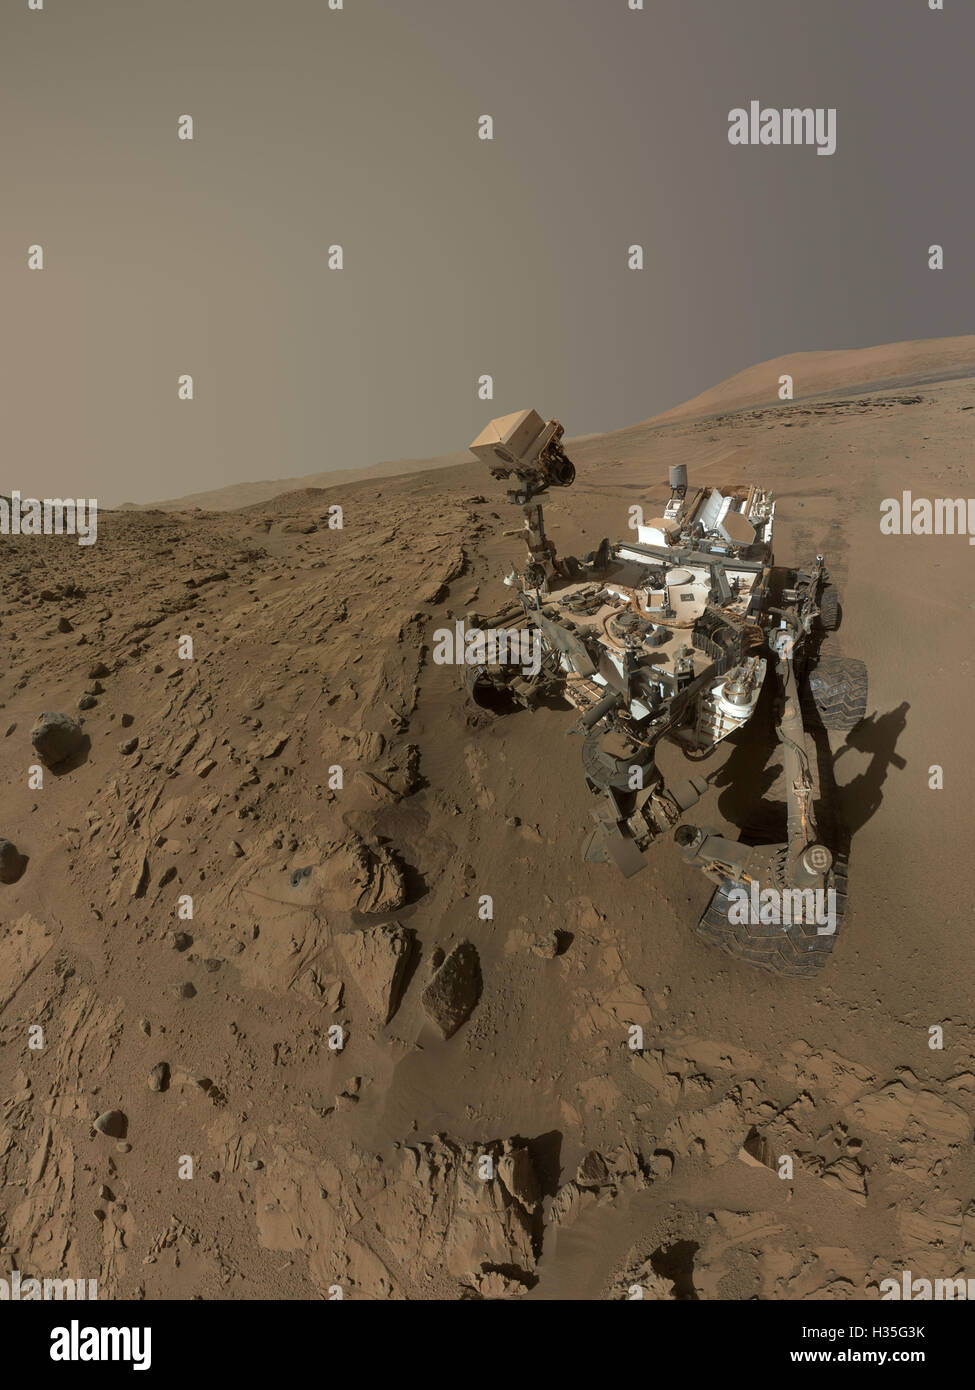 NASA Curiosità Mars rover sulla superficie del pianeta Marte in 2014 - Foto fornite dalla NASA Foto Stock